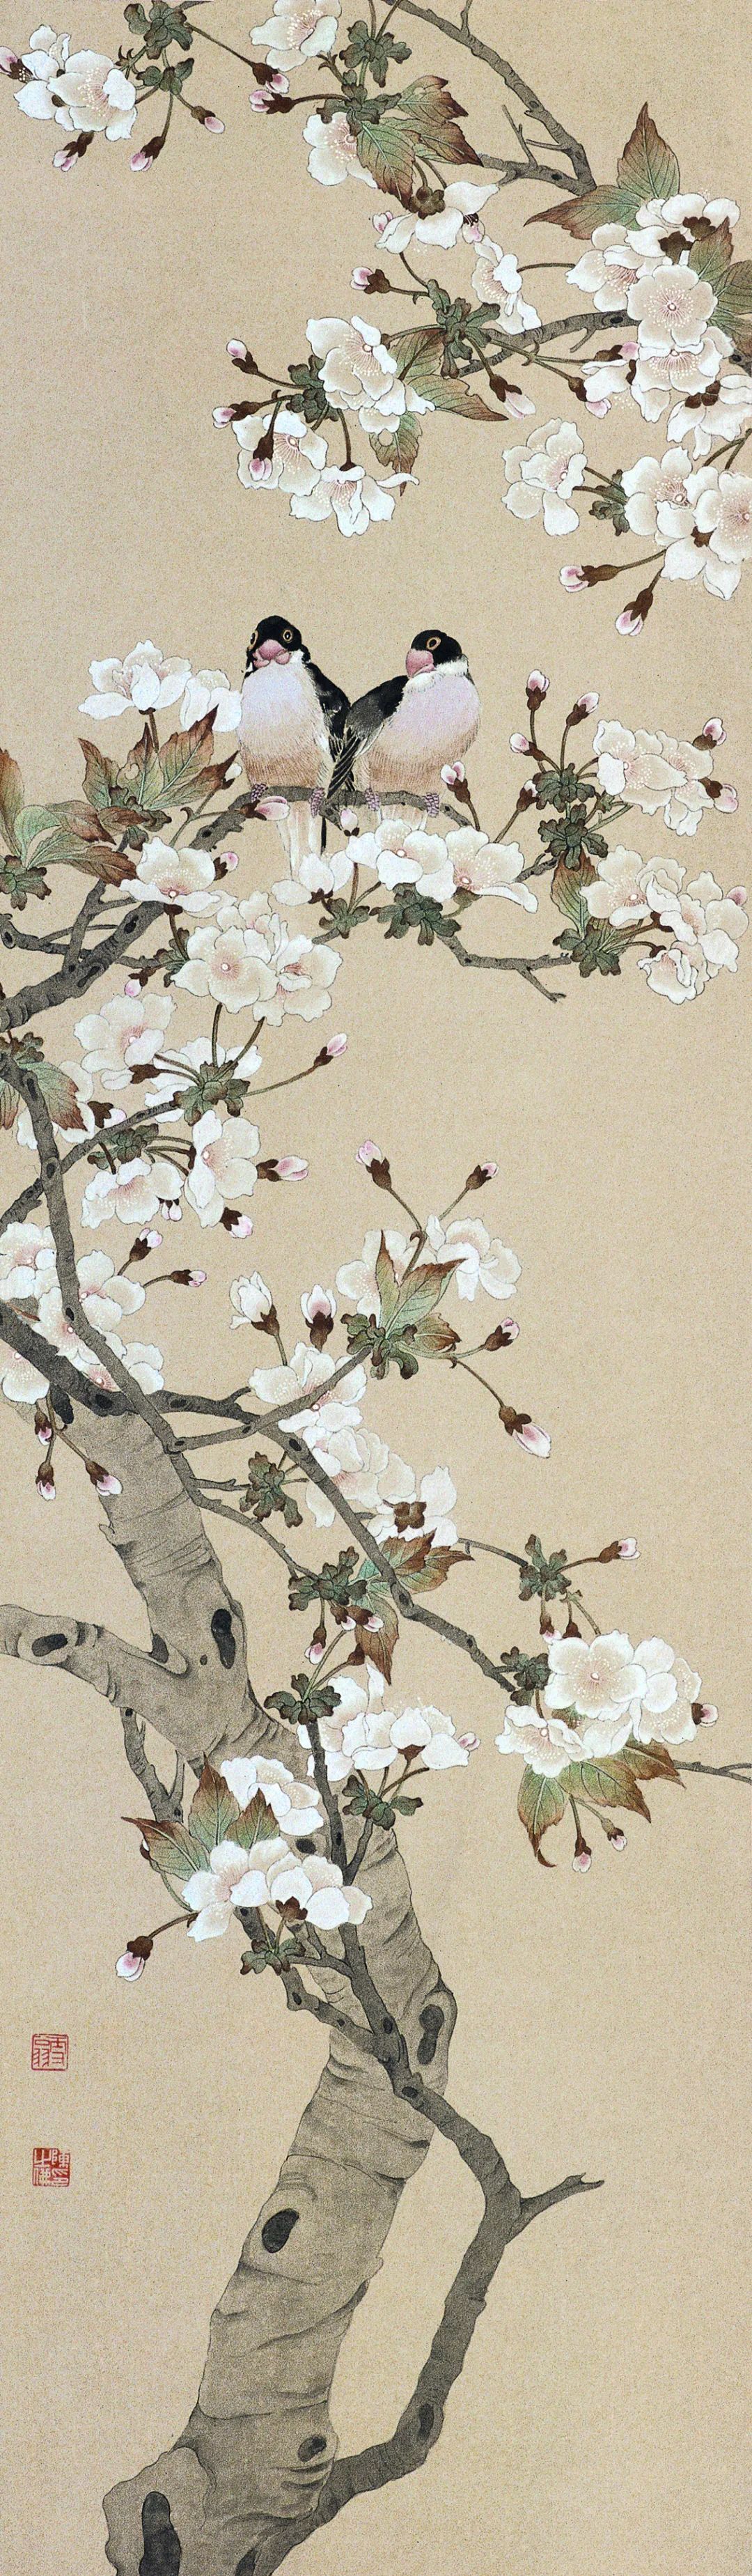 《樱花小鸟》 陈之佛 中国画 110.8x32.3cm 1959年 中国美术馆藏